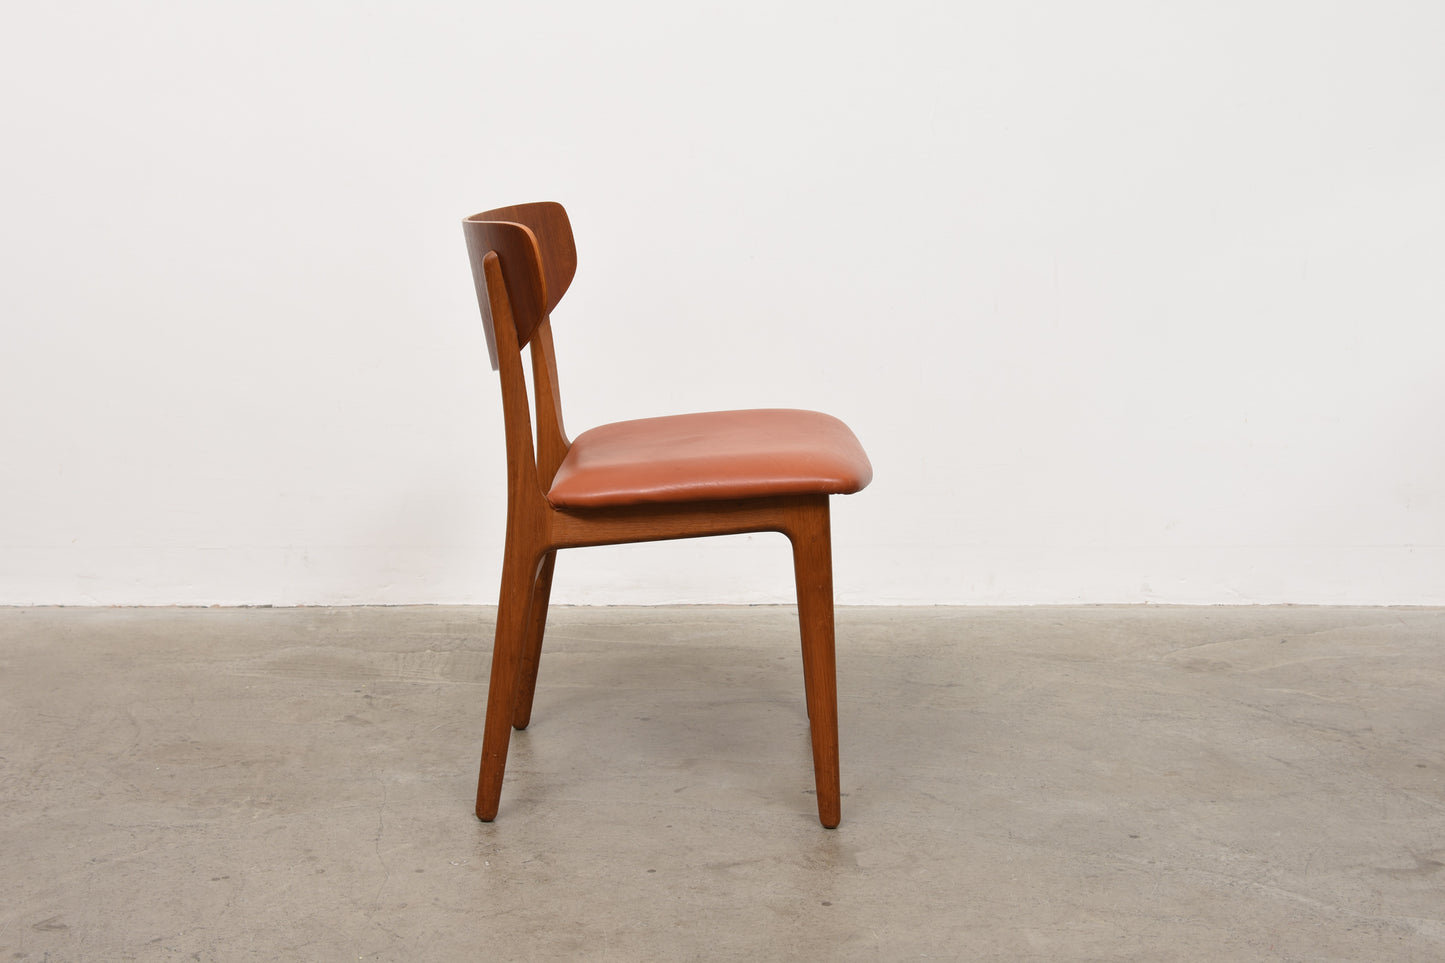 1960s Danish teak + oak chair